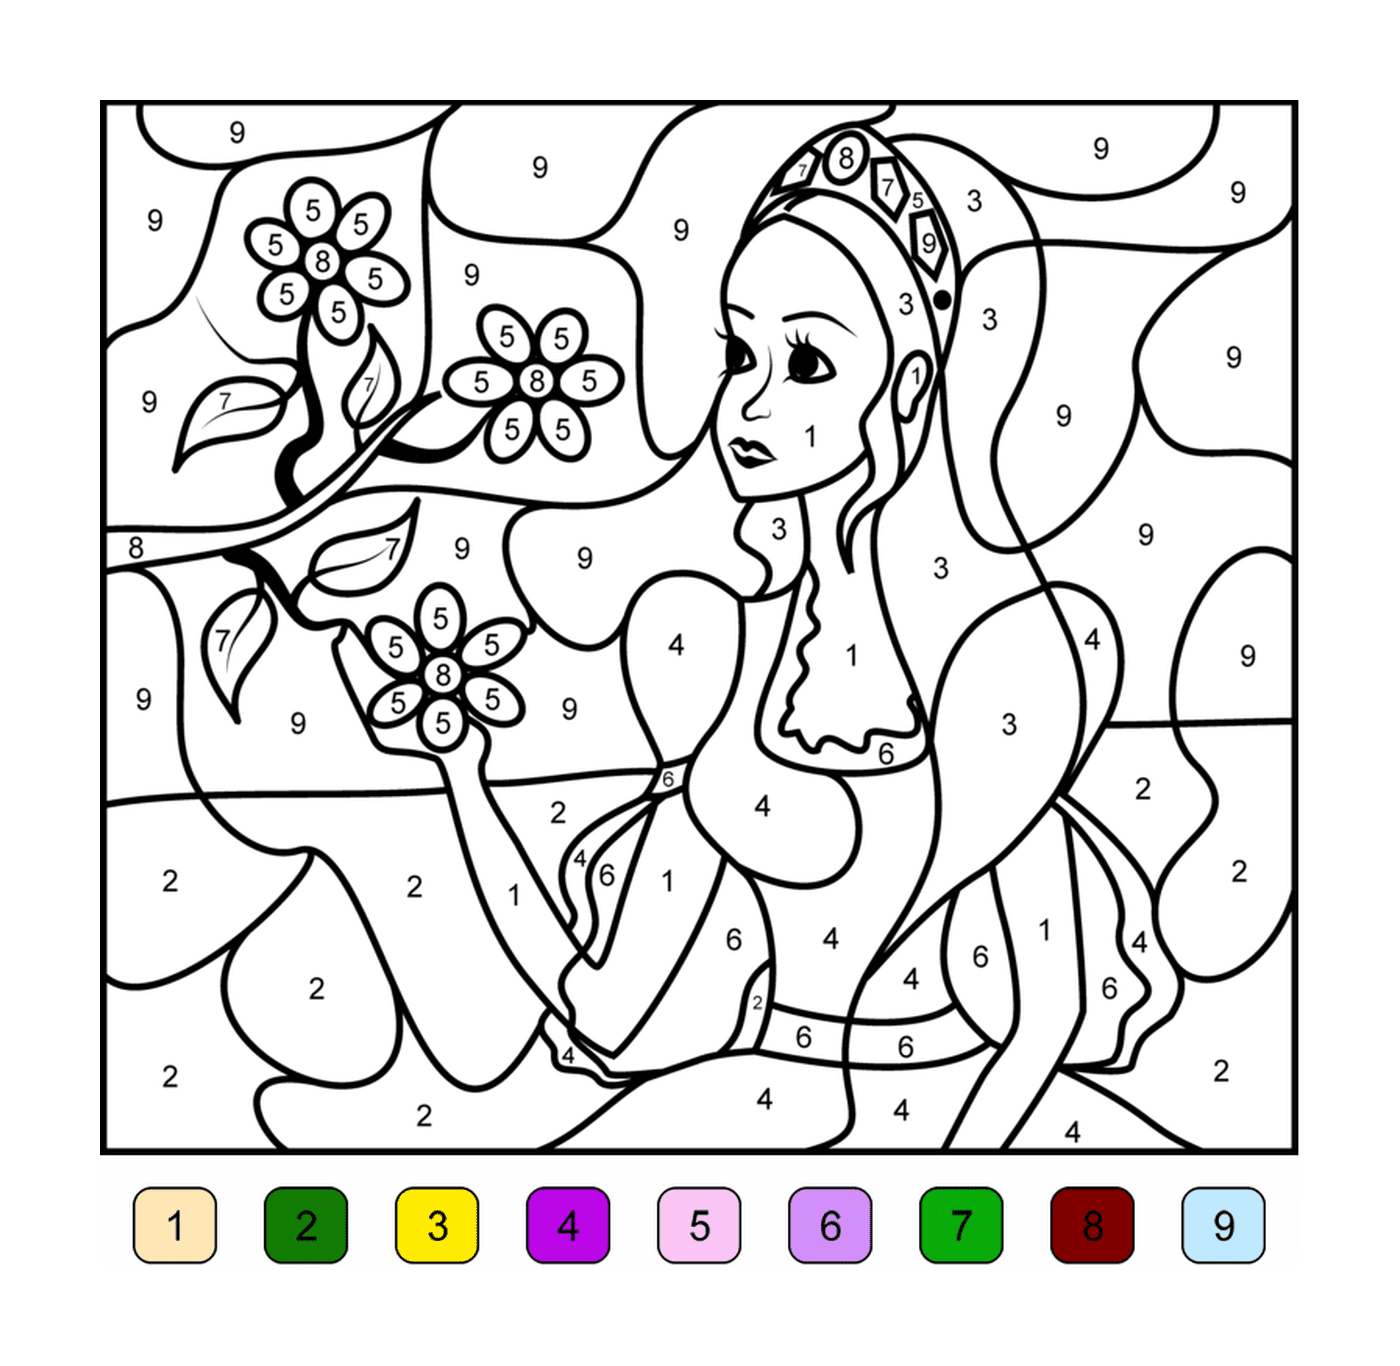  一位有一束花花的女士 彩色按数字排列 